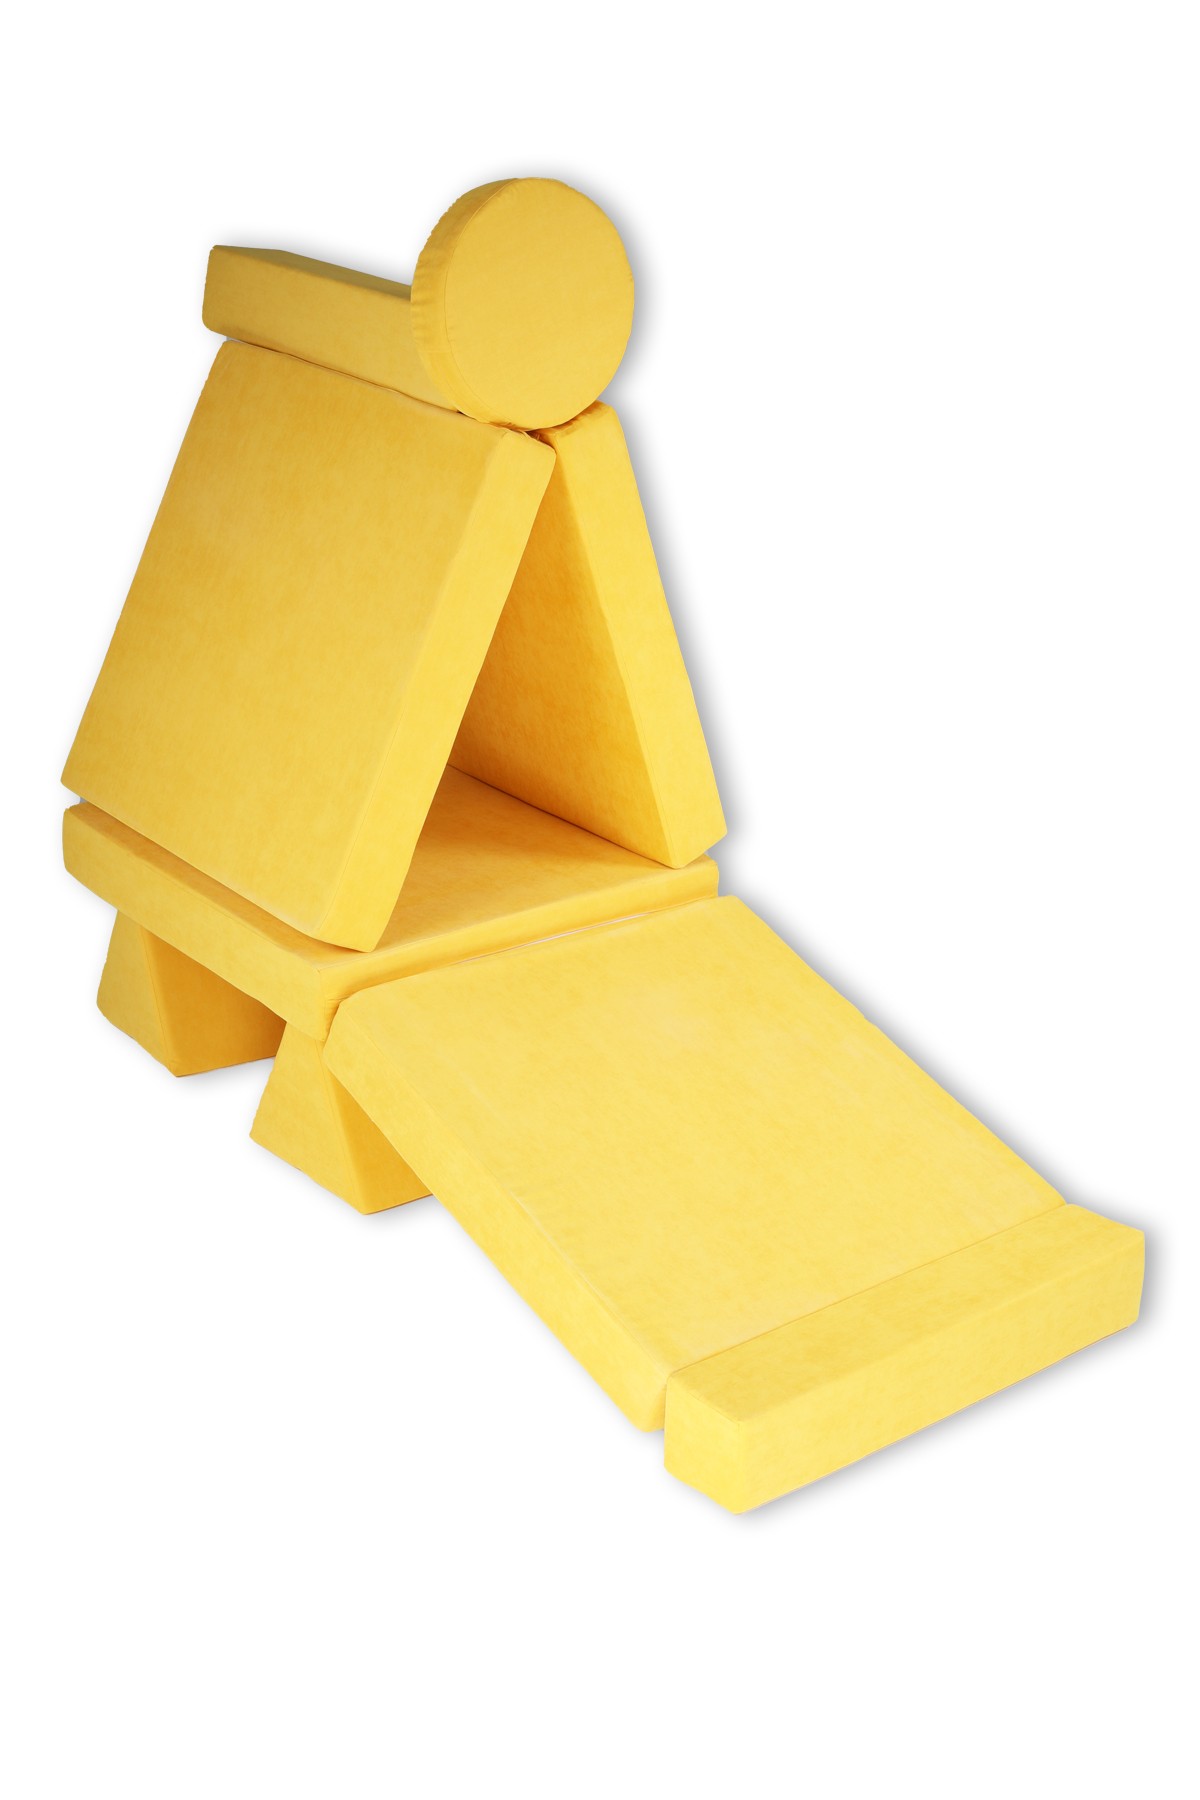 10 Pieces Yellow Puzzle Sponge